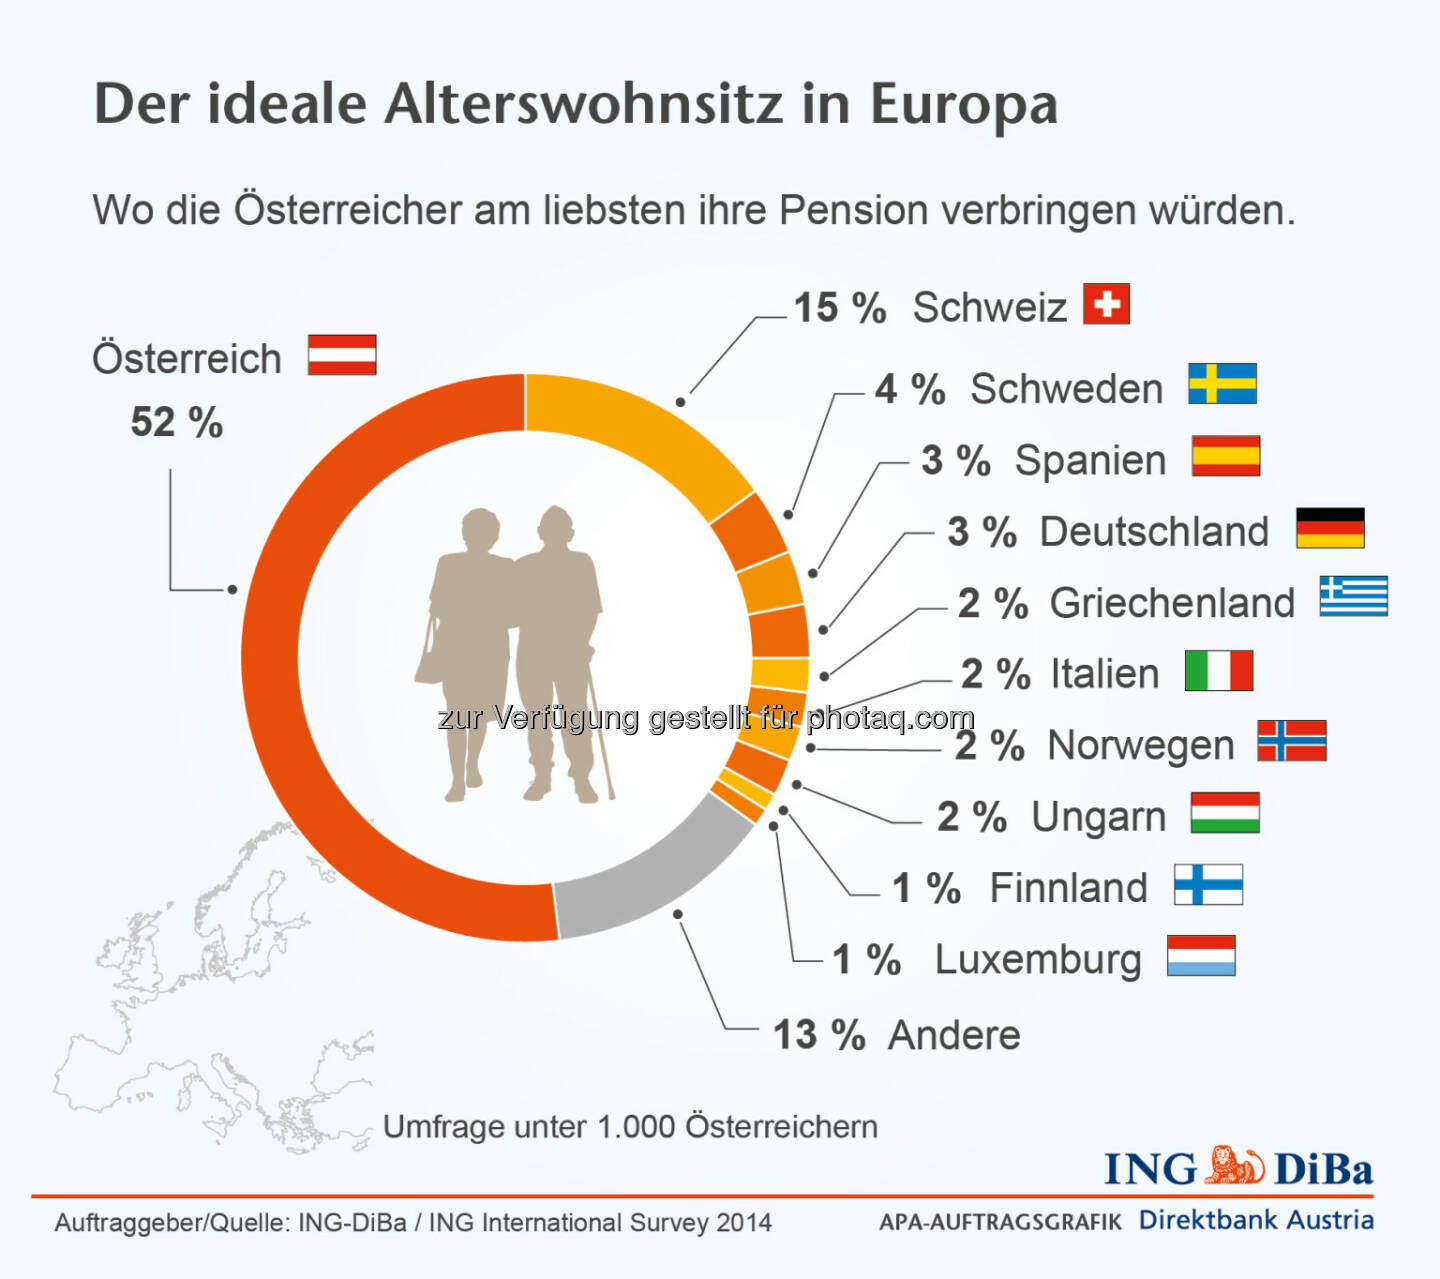 ING DiBa: Der ideale Alterswohnsitz: Wo die Österreicher am liebsten ihre Pension verbringen würden. 